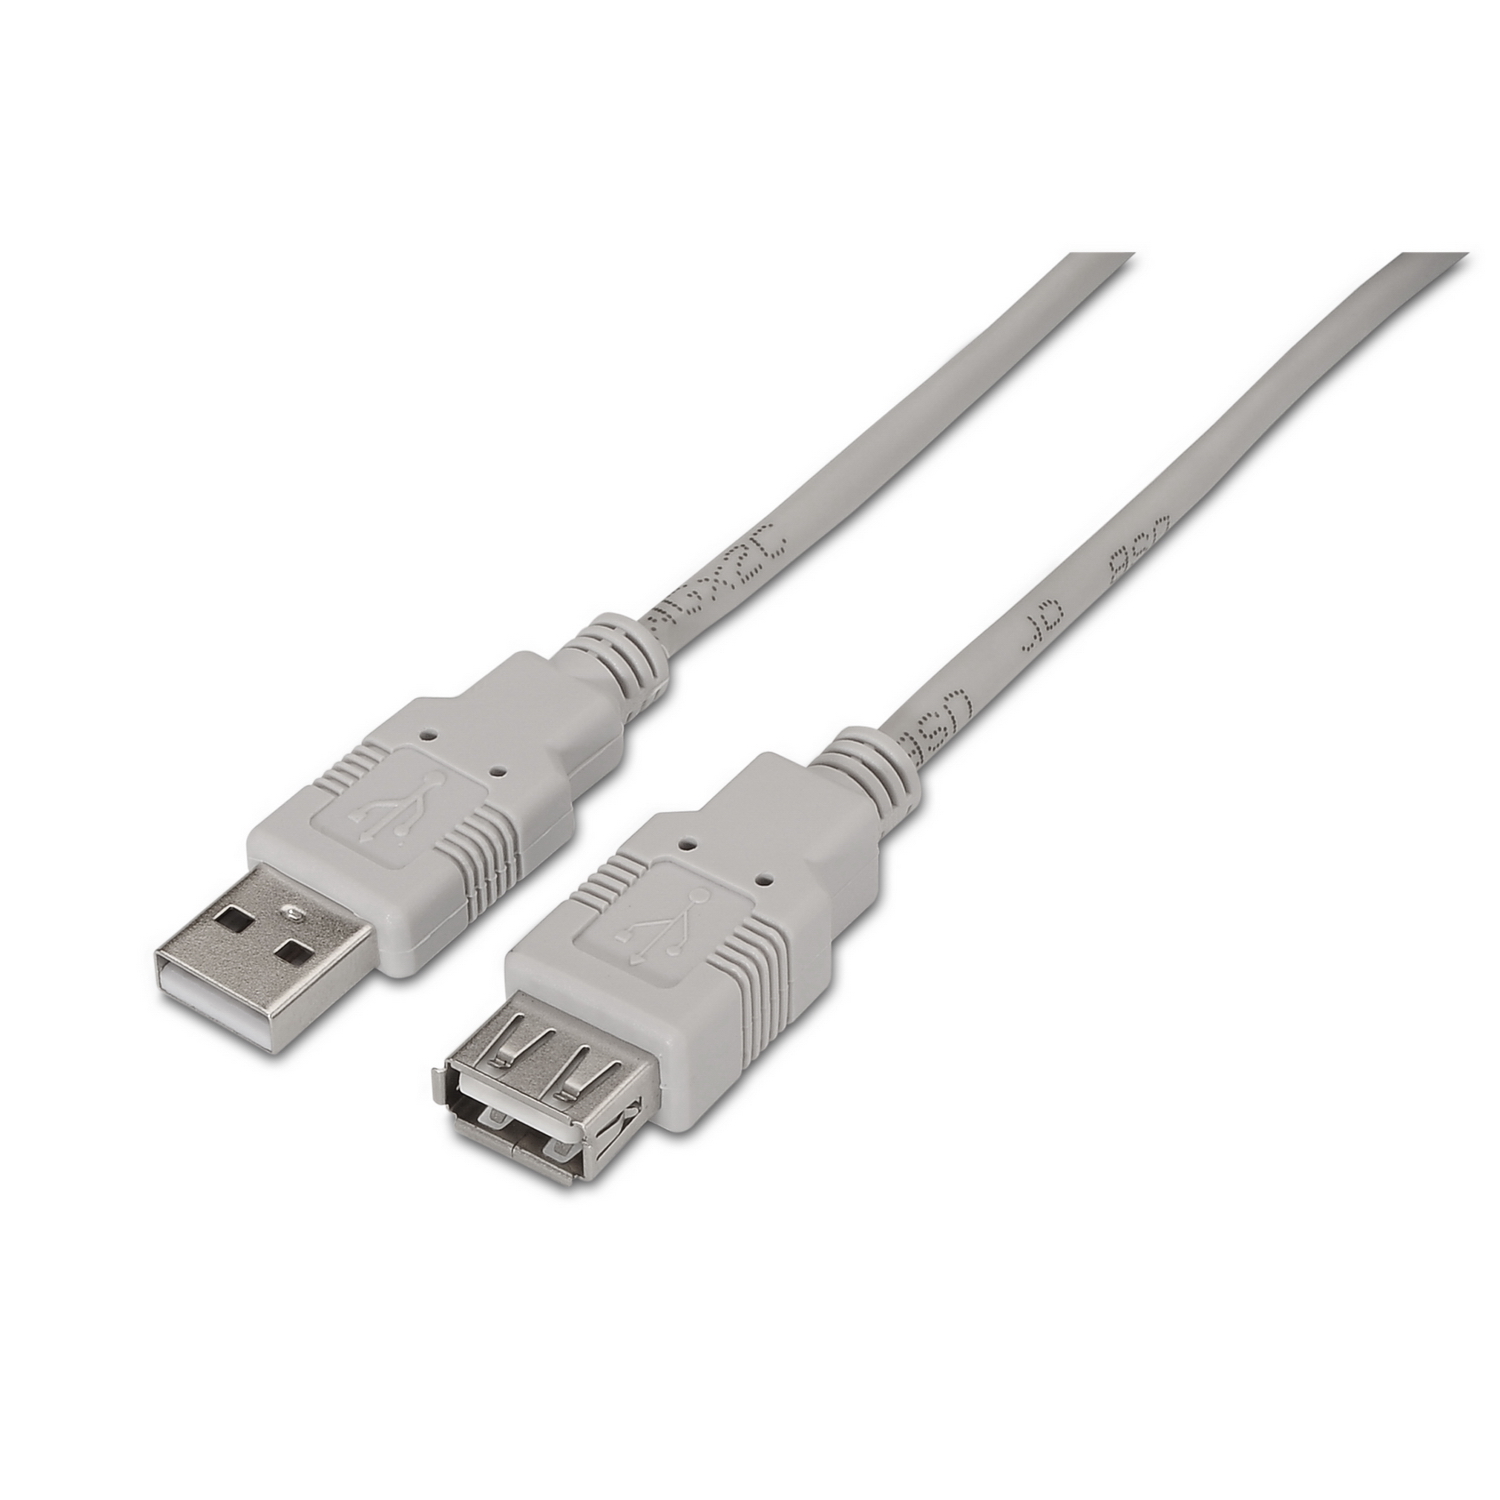 Cable alargador USB 3.0 de 50 cm tipo A Macho a Hembra - Cablematic